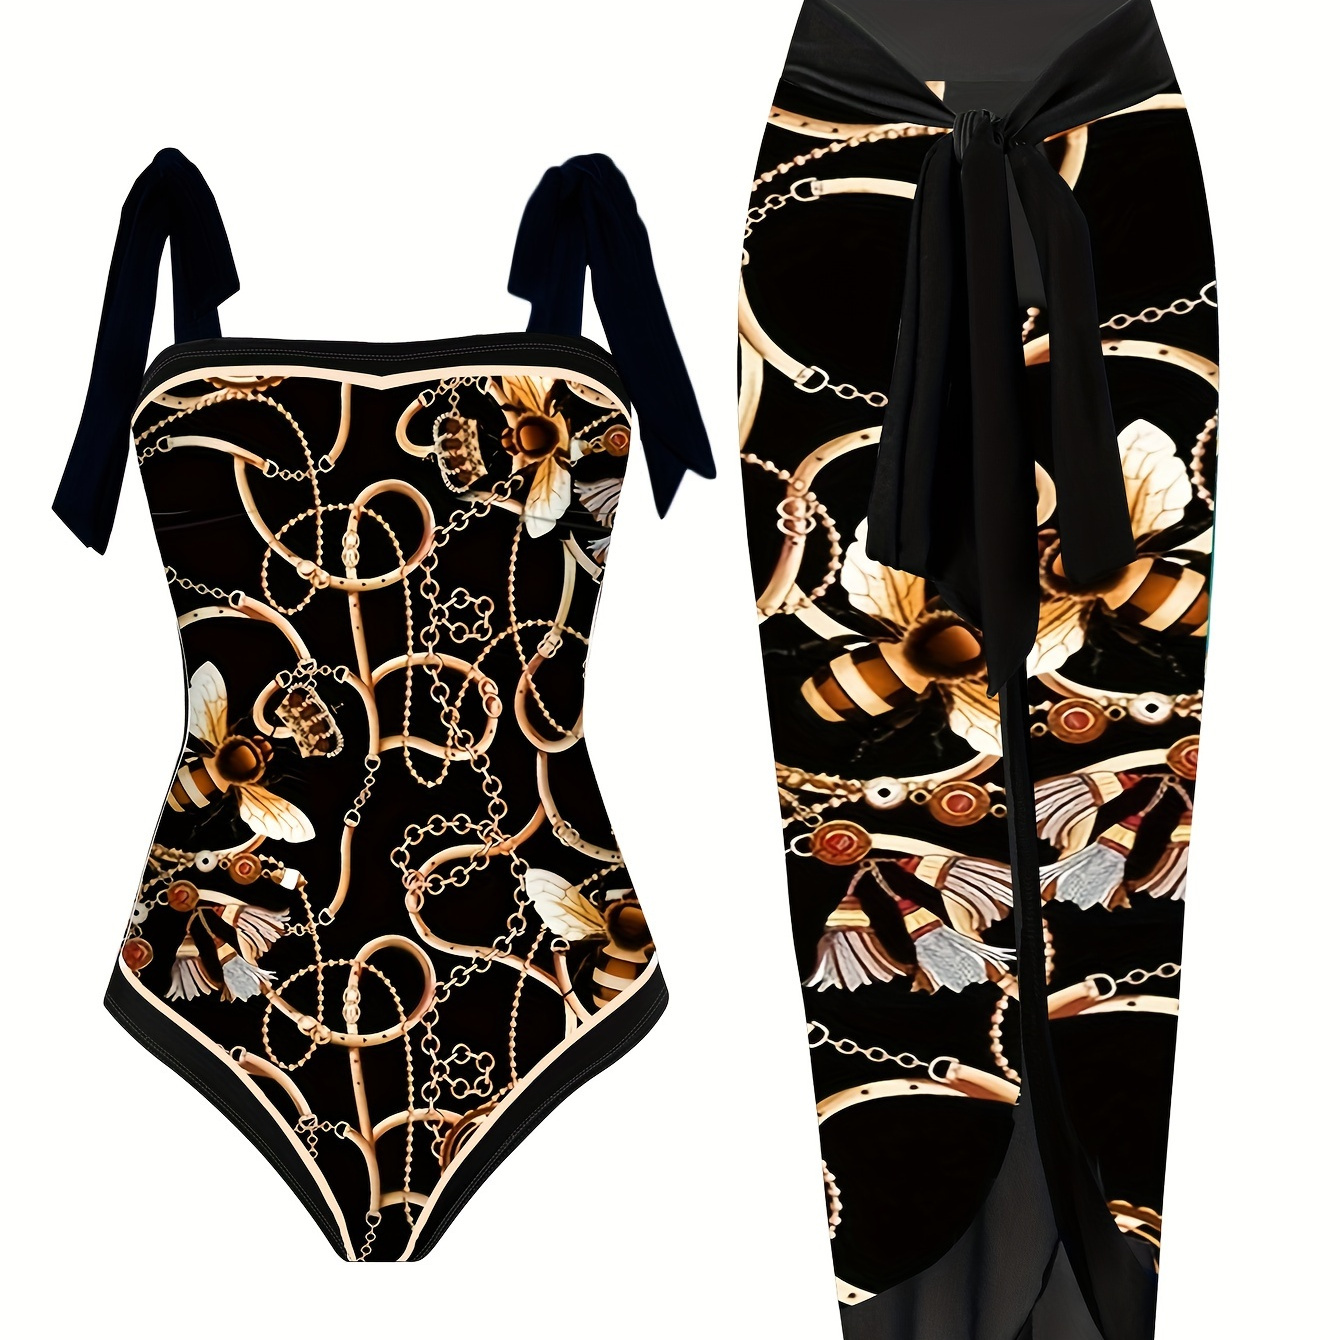 

Plus Size Retro Swimsuit Set, Women's Plus Chain & Bee Print Tie Shoulder 1 Piece Swimsuit & Bow Detail Cover Up Skirt Bathing Suit 2 Piece Set